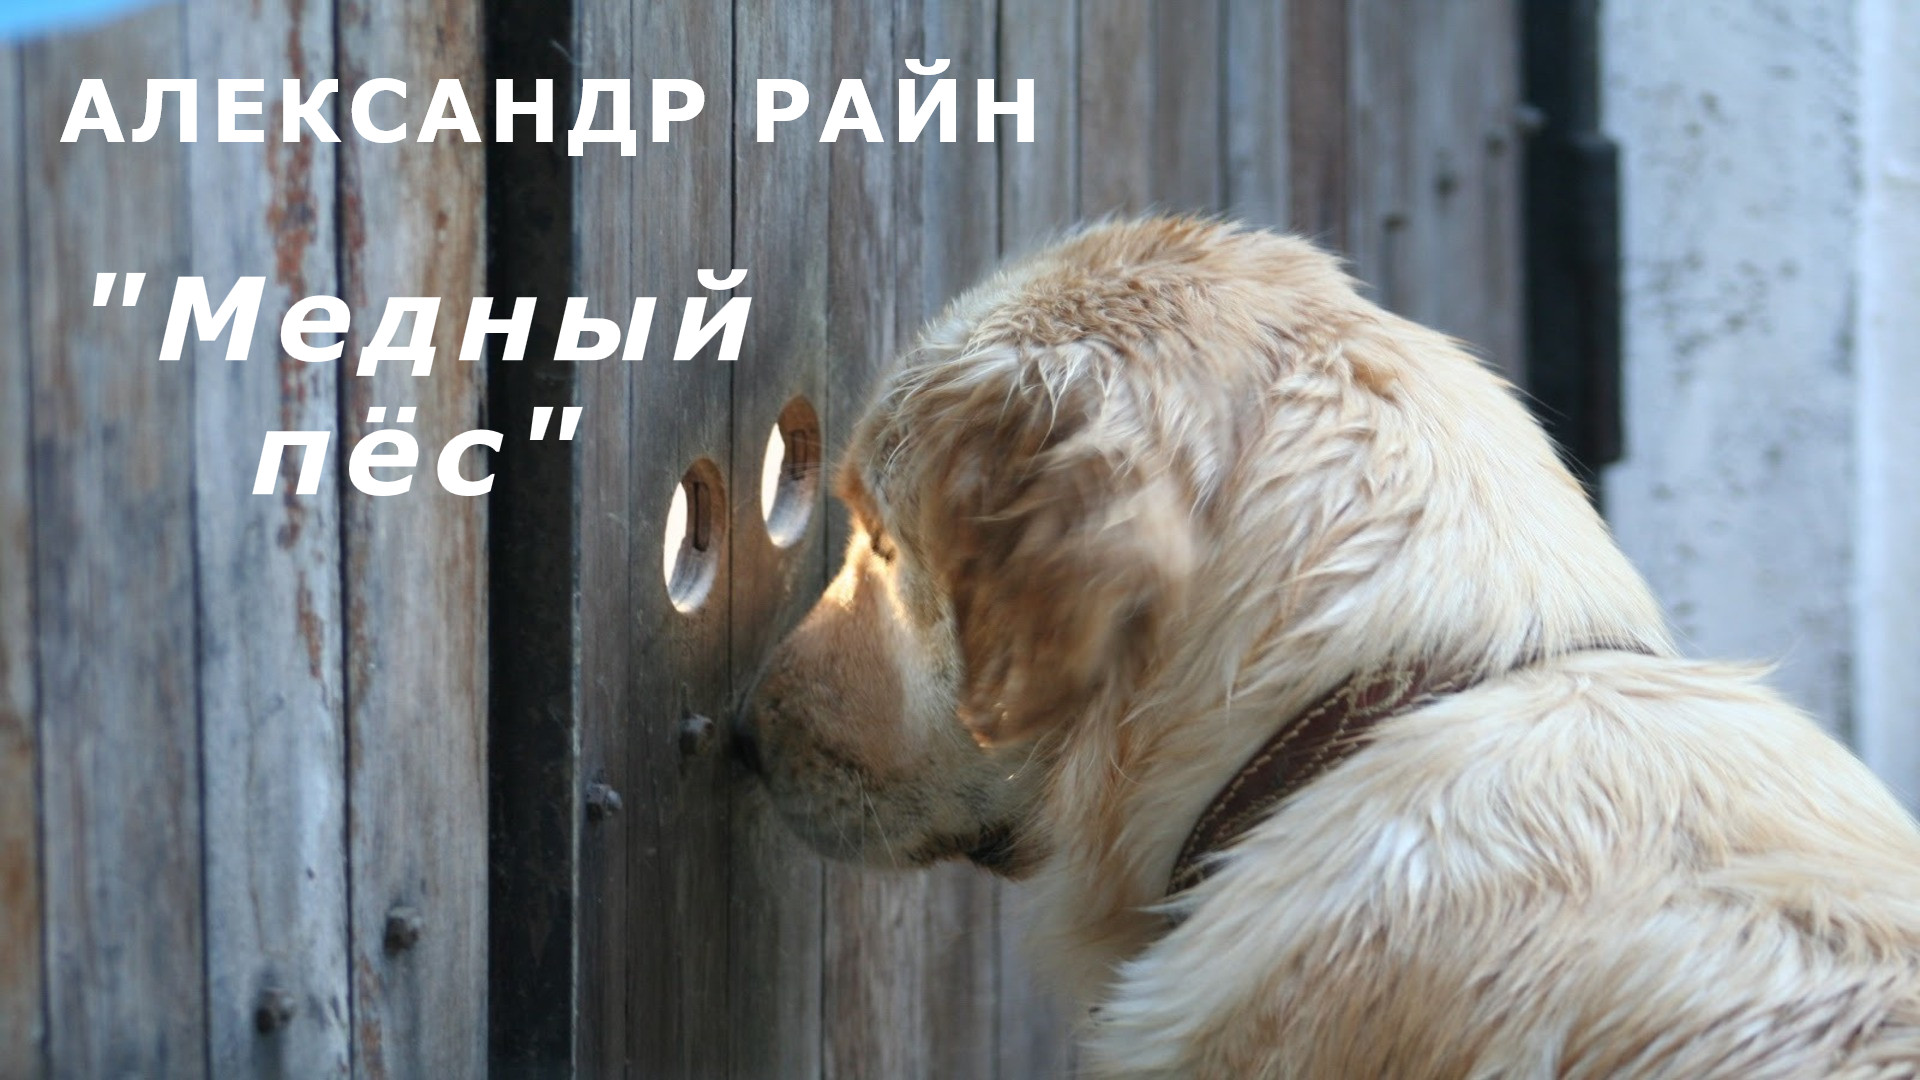 Посмотри внимательно видео. Очень внимательная собака. Собака на заборе. Осторожно очень внимательная собака.